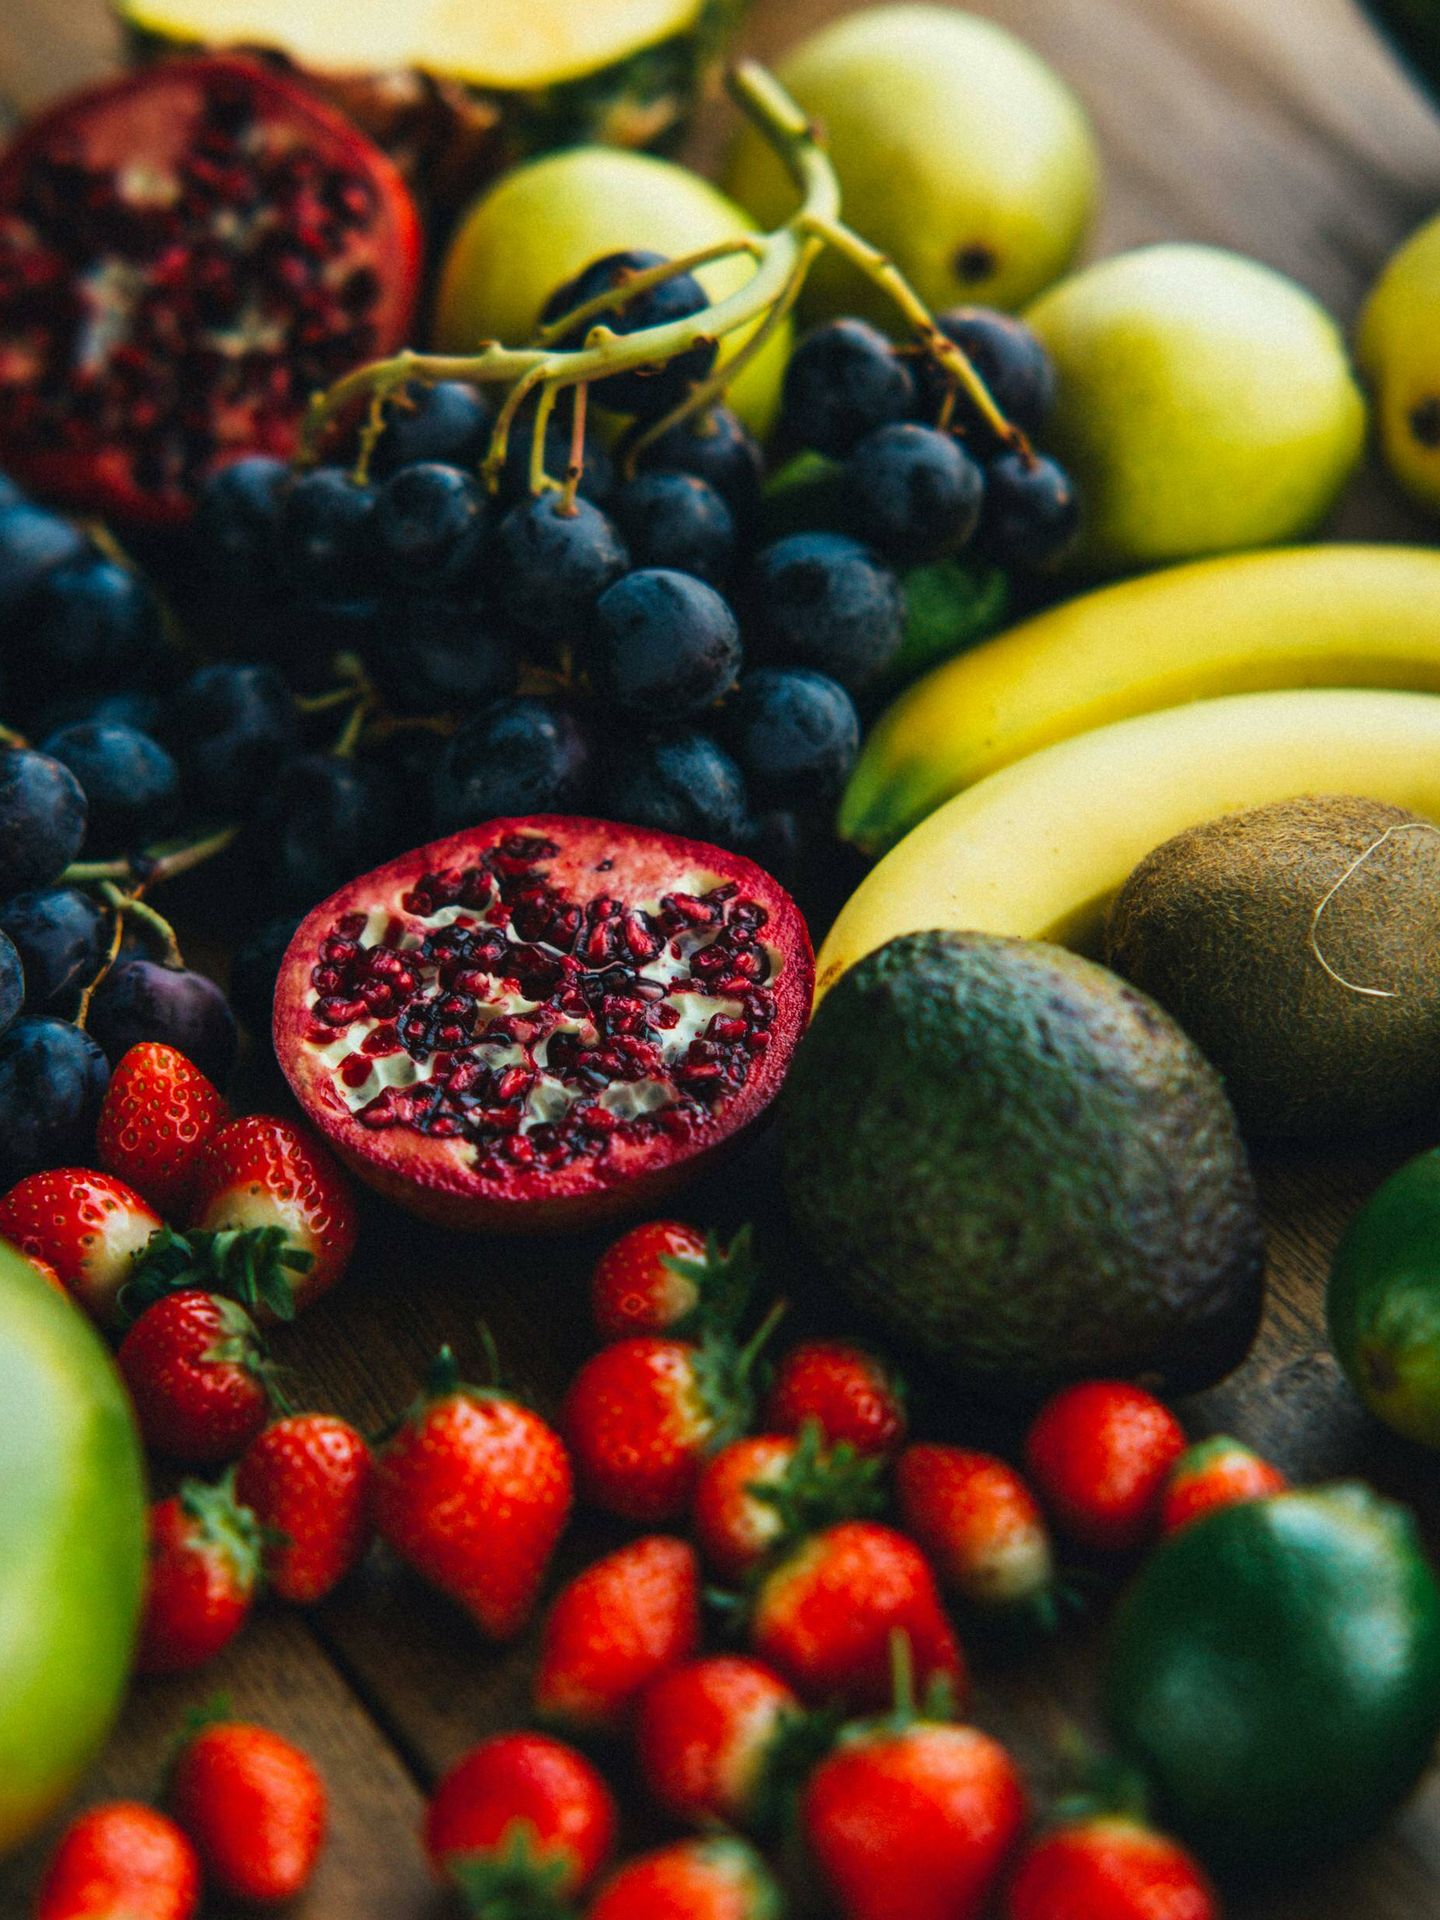 El plátano puede echar a perder los frutos rojos y las uvas. (Pexels/Viktoria Slowikowska)